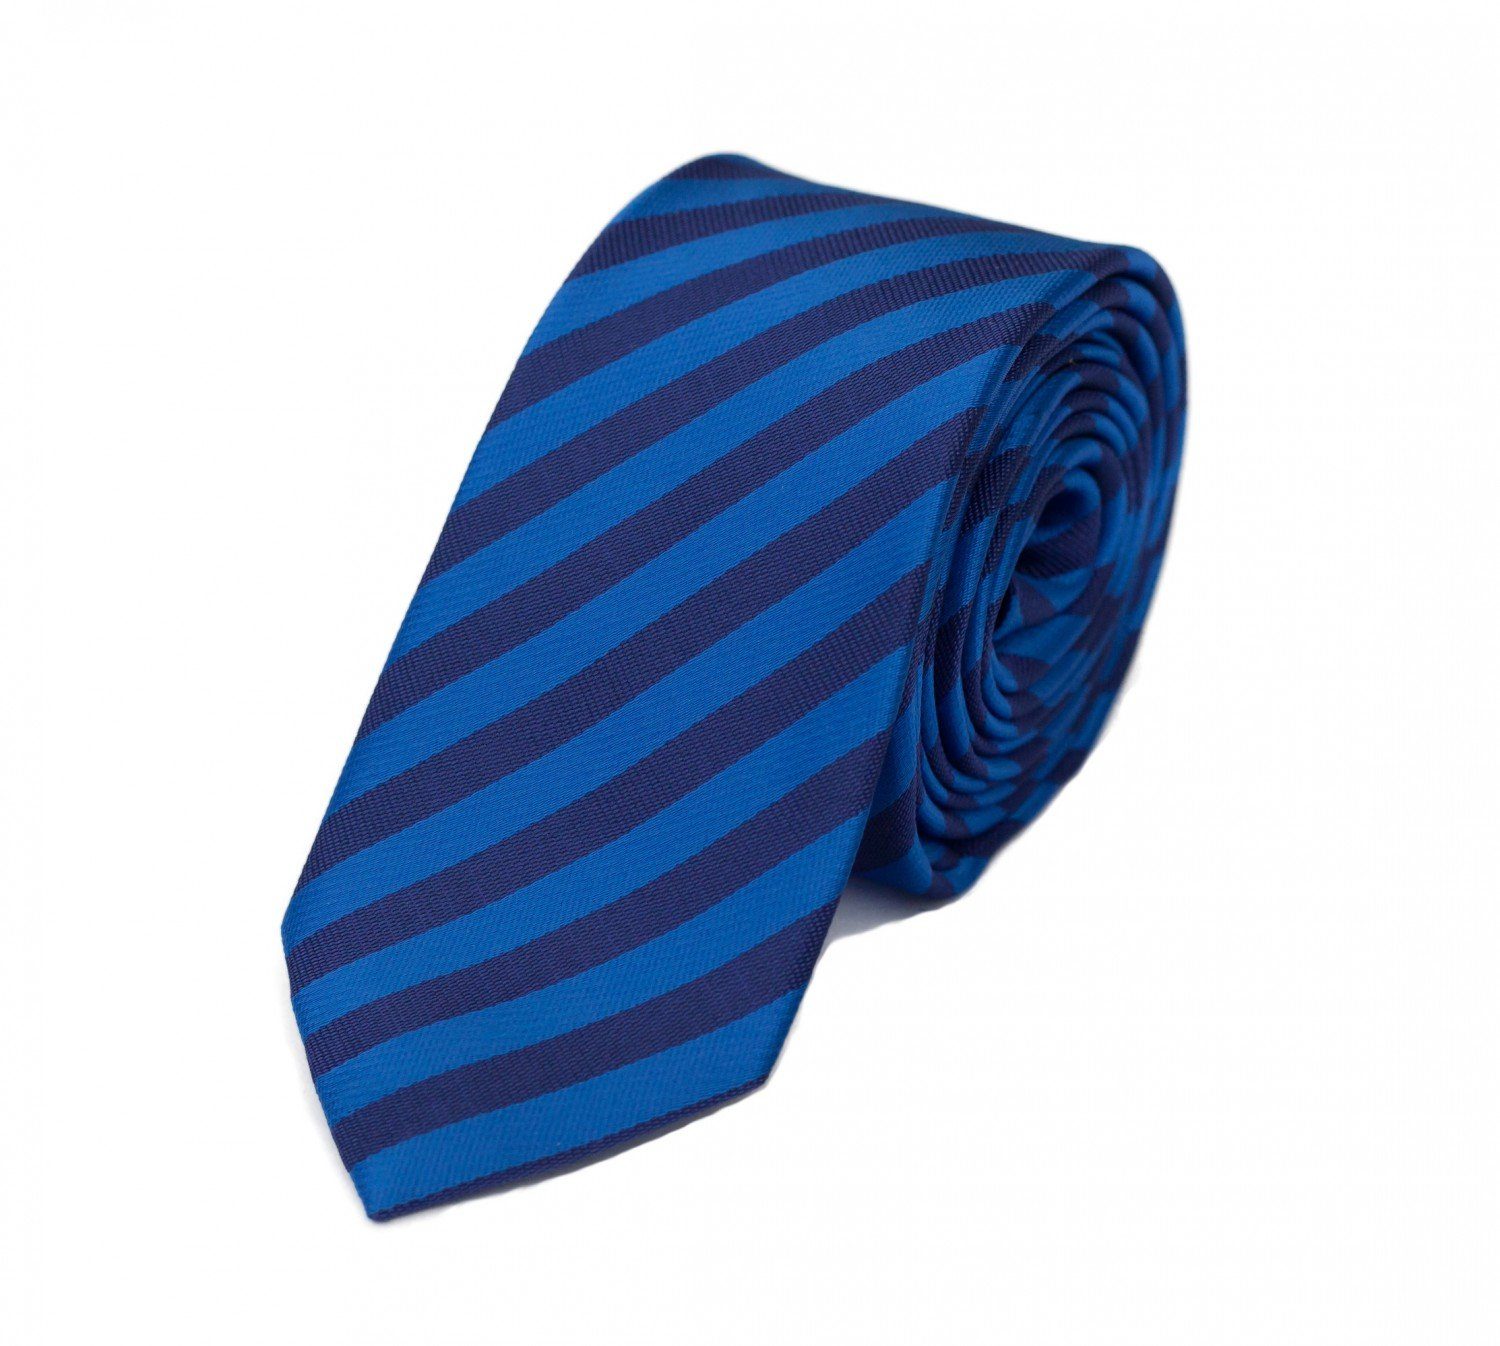 8cm in Box, Breit gestreifte 6cm oder Stahlblau/Navyblau mit Streifen (ohne Herren Breite Gestreift) Krawatte Tie Farini Krawatte (8cm), Fabio -